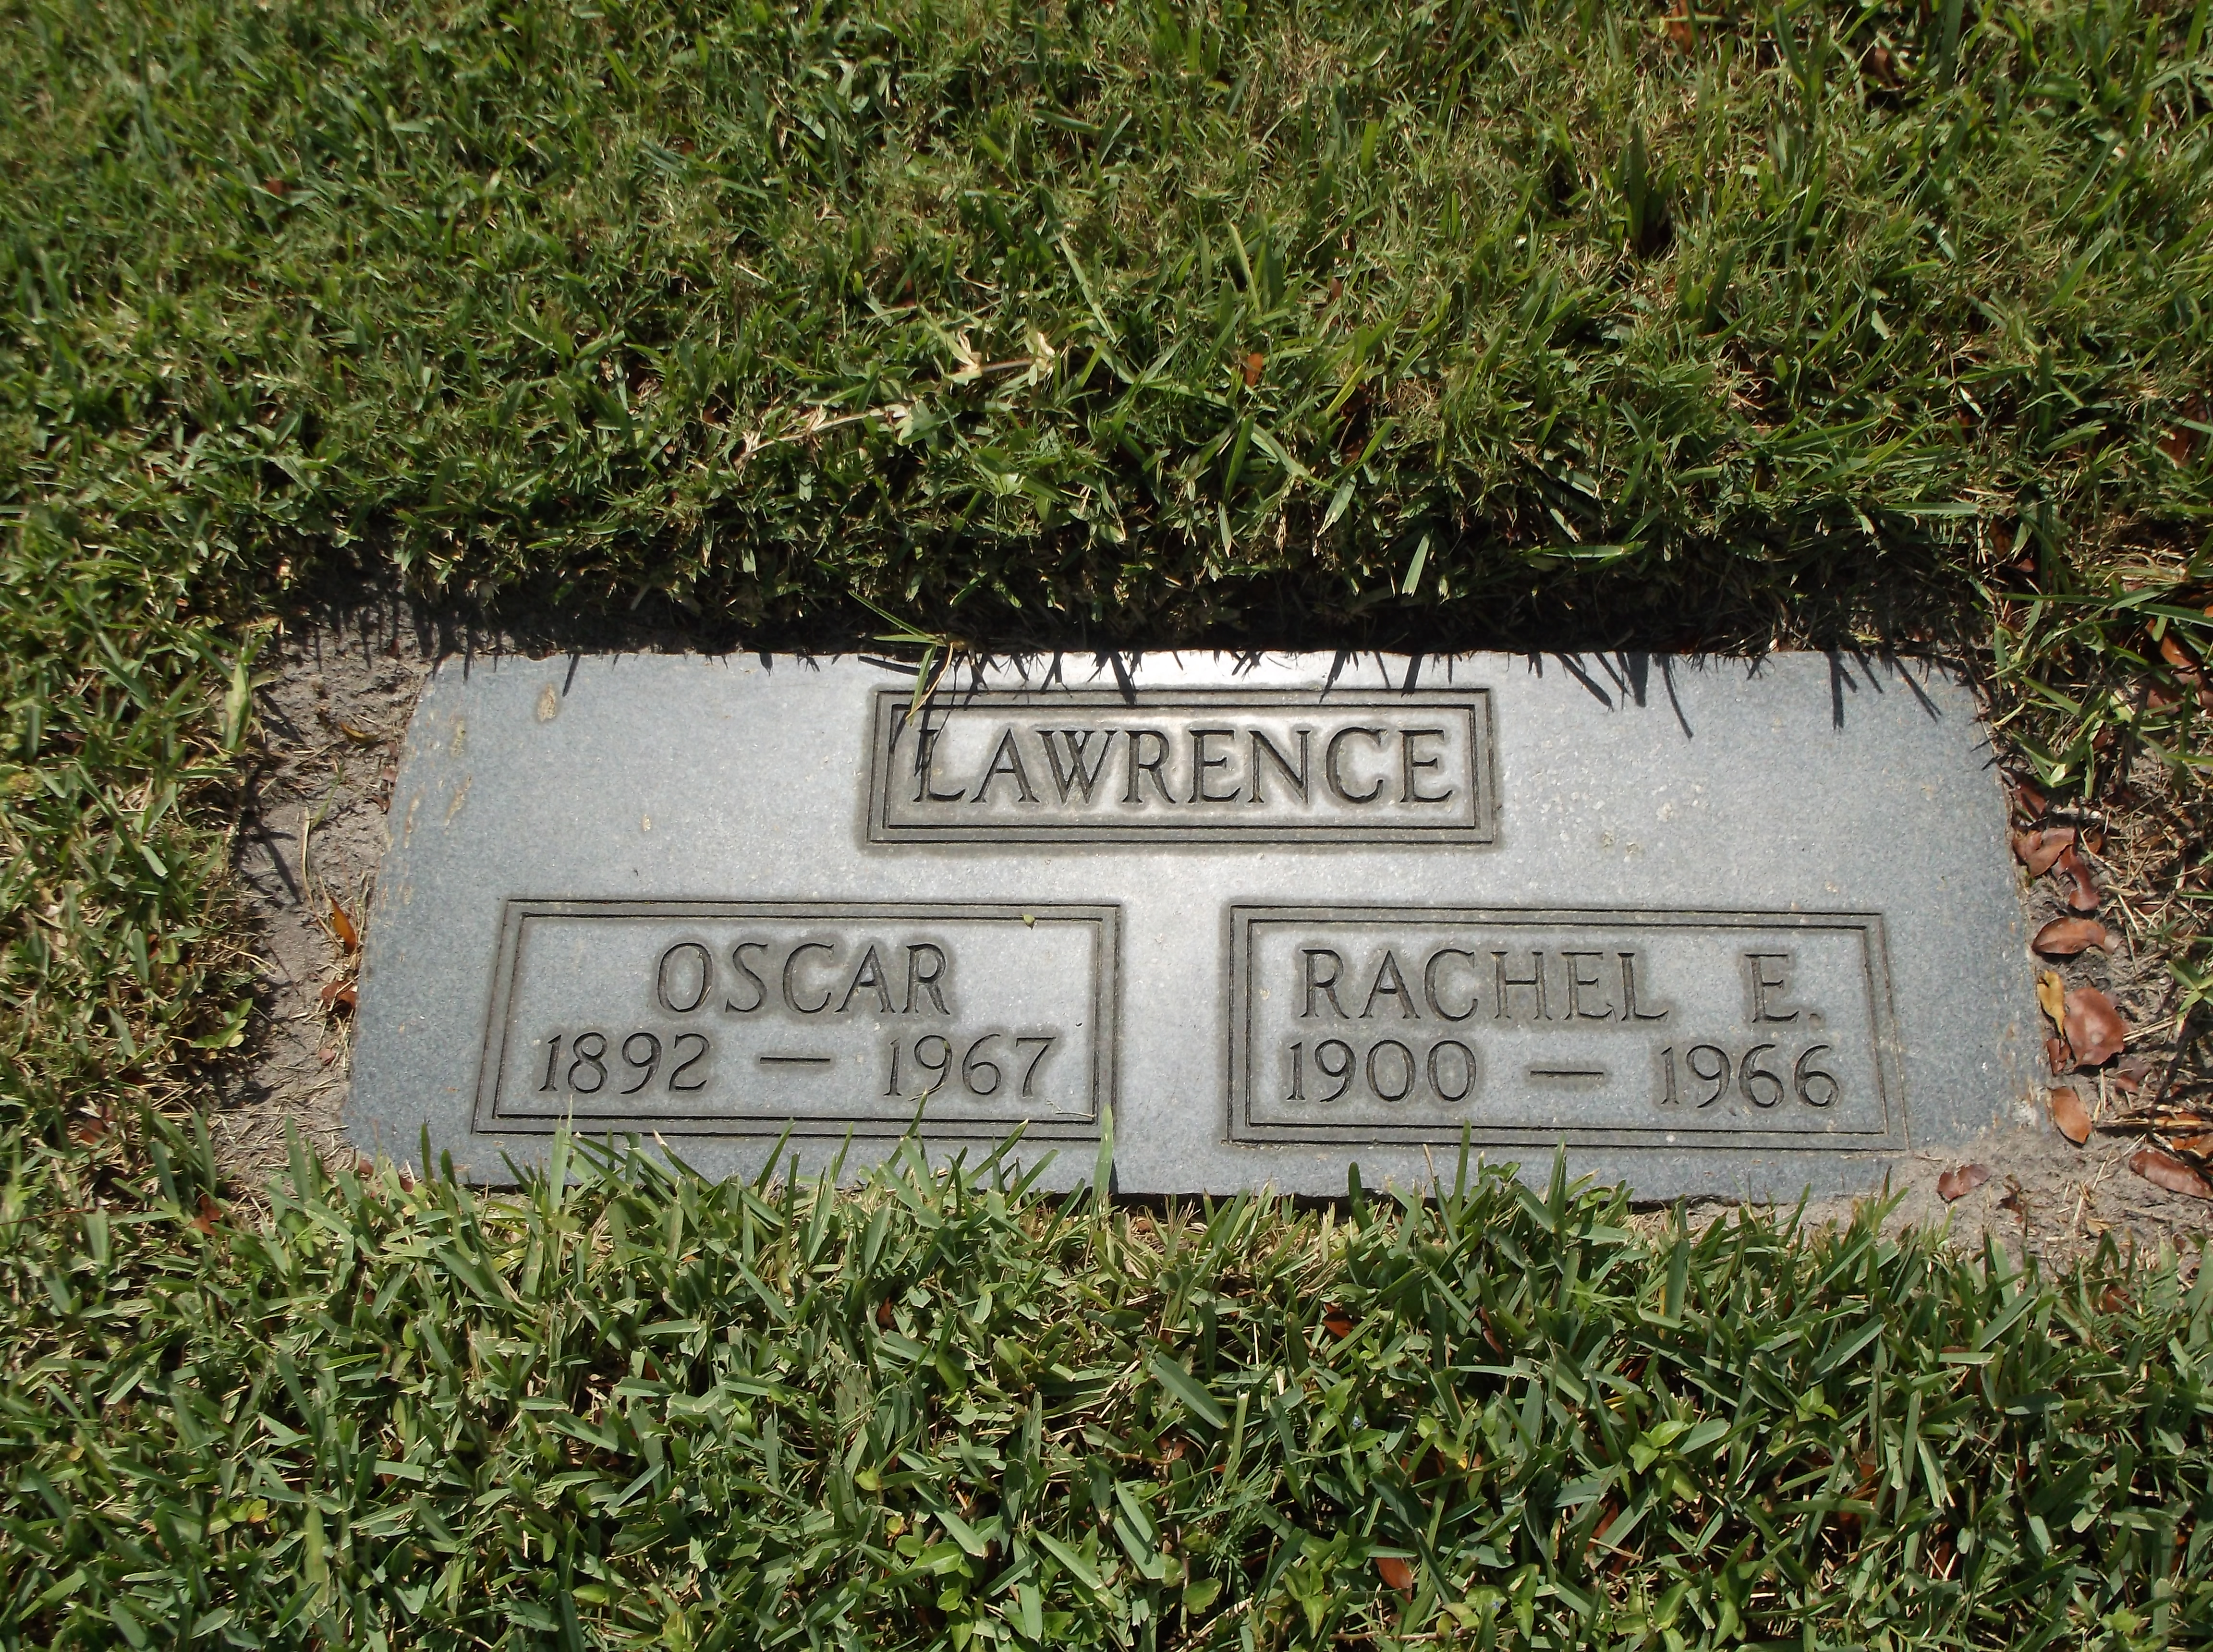 Rachel E Lawrence